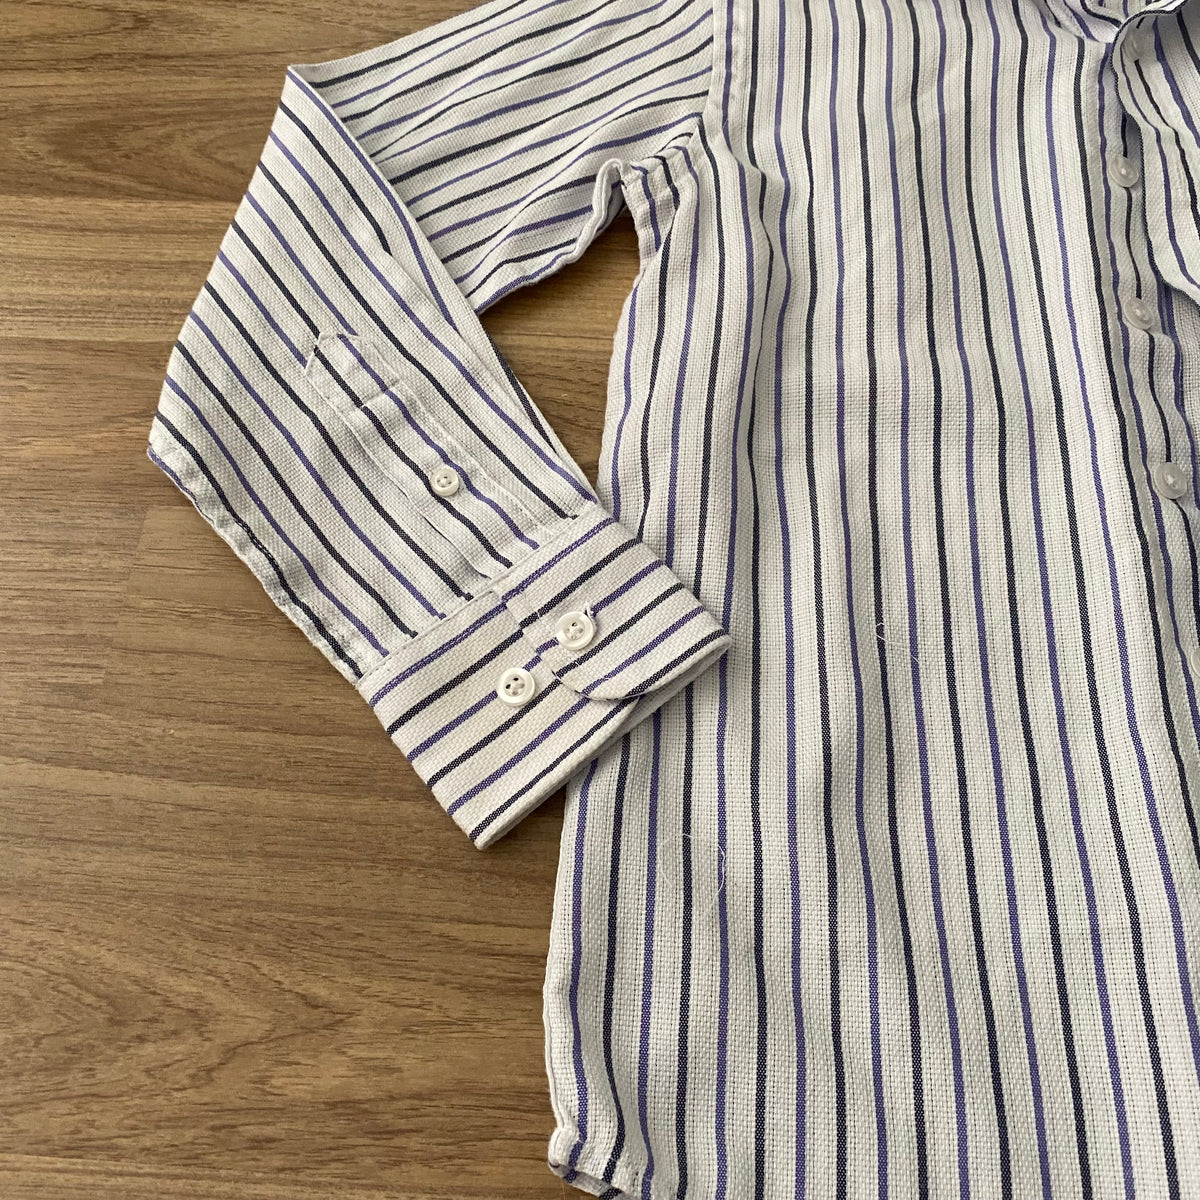 Full Button Up Dress Shirt (Boys Size 8)